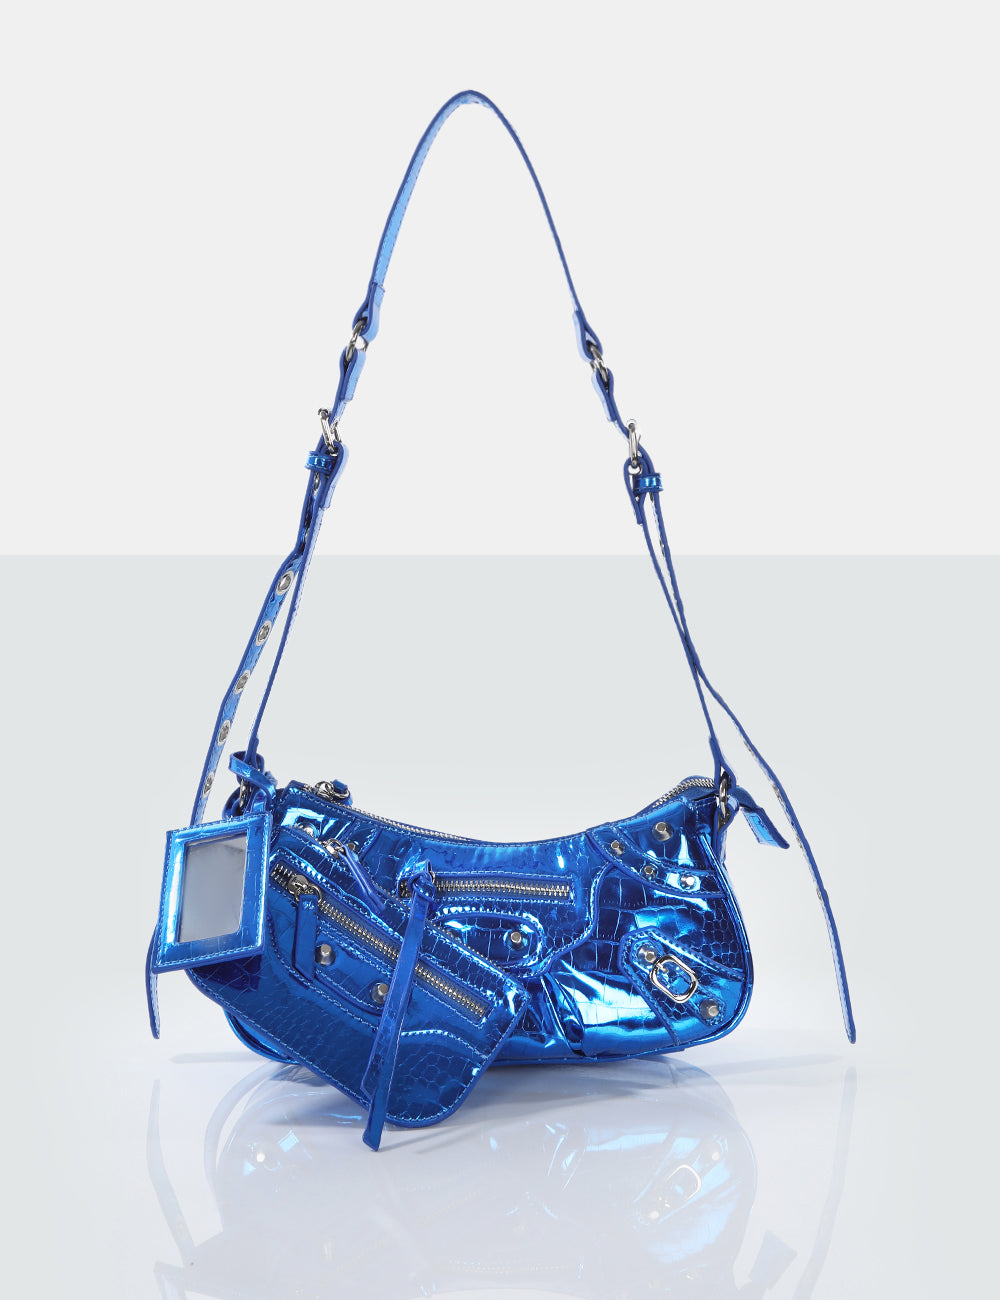 triple zipper jeans blue leather handbag — MUSEUM OUTLETS